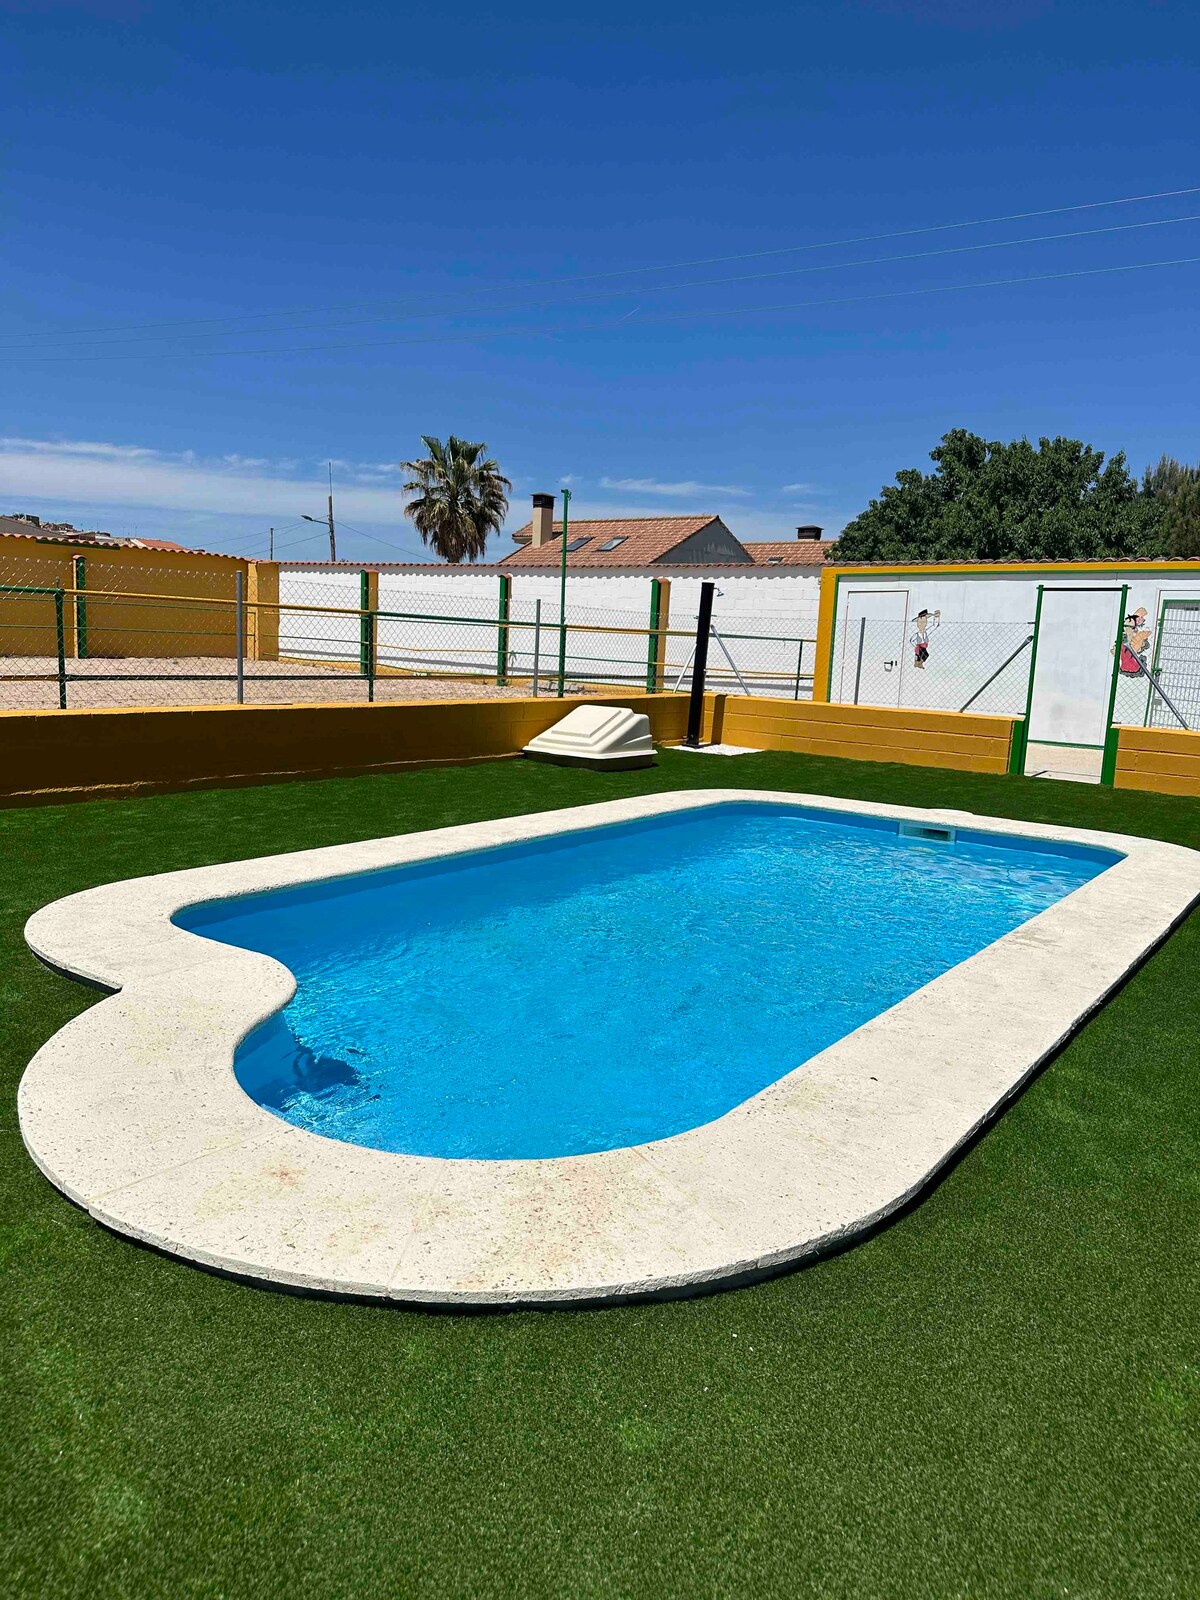 Casa Rural con piscina, Eventos Bodas cerca Madrid